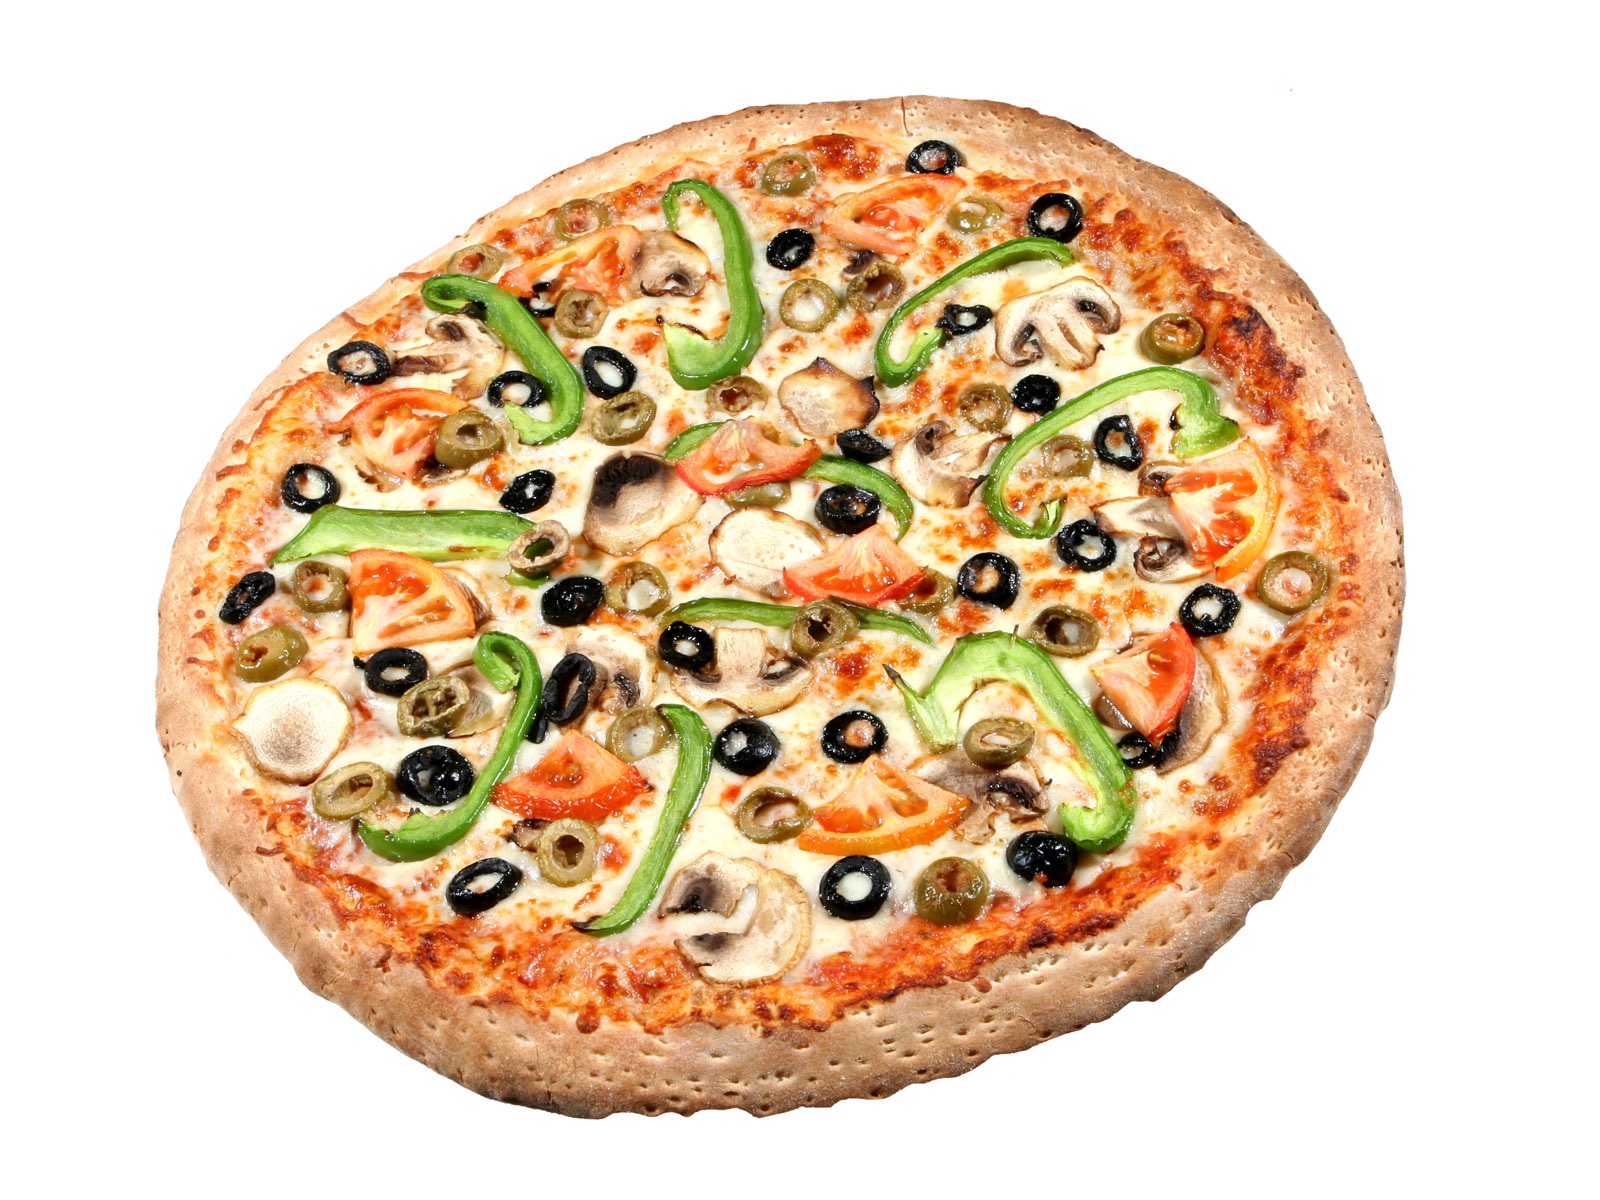 Fondos de pizzerías de Alimentos (4) #8 - 1600x1200